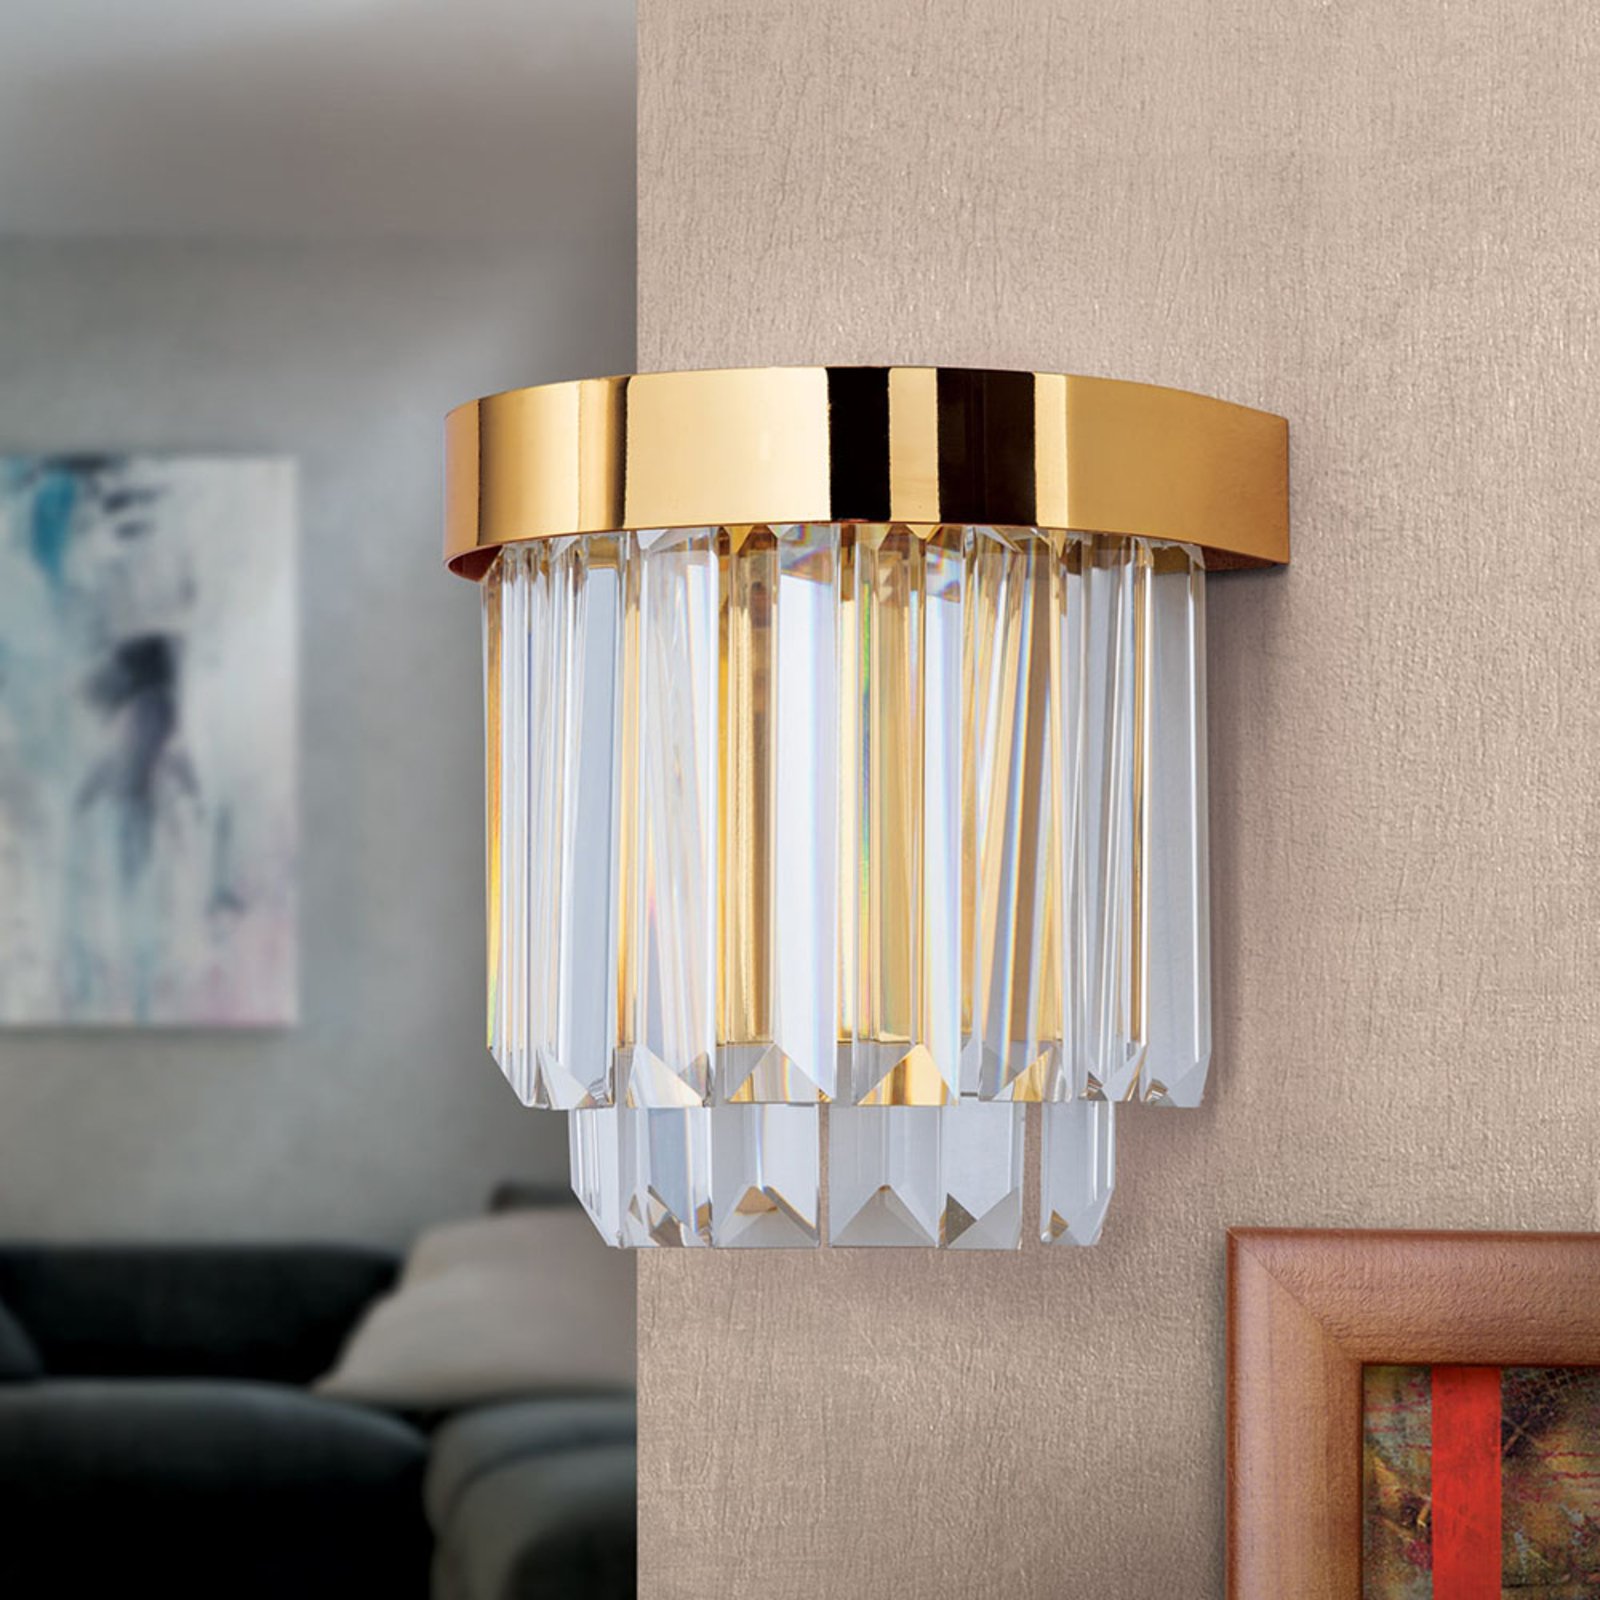 LED-vägglampa Prism med up- och downlight, guld